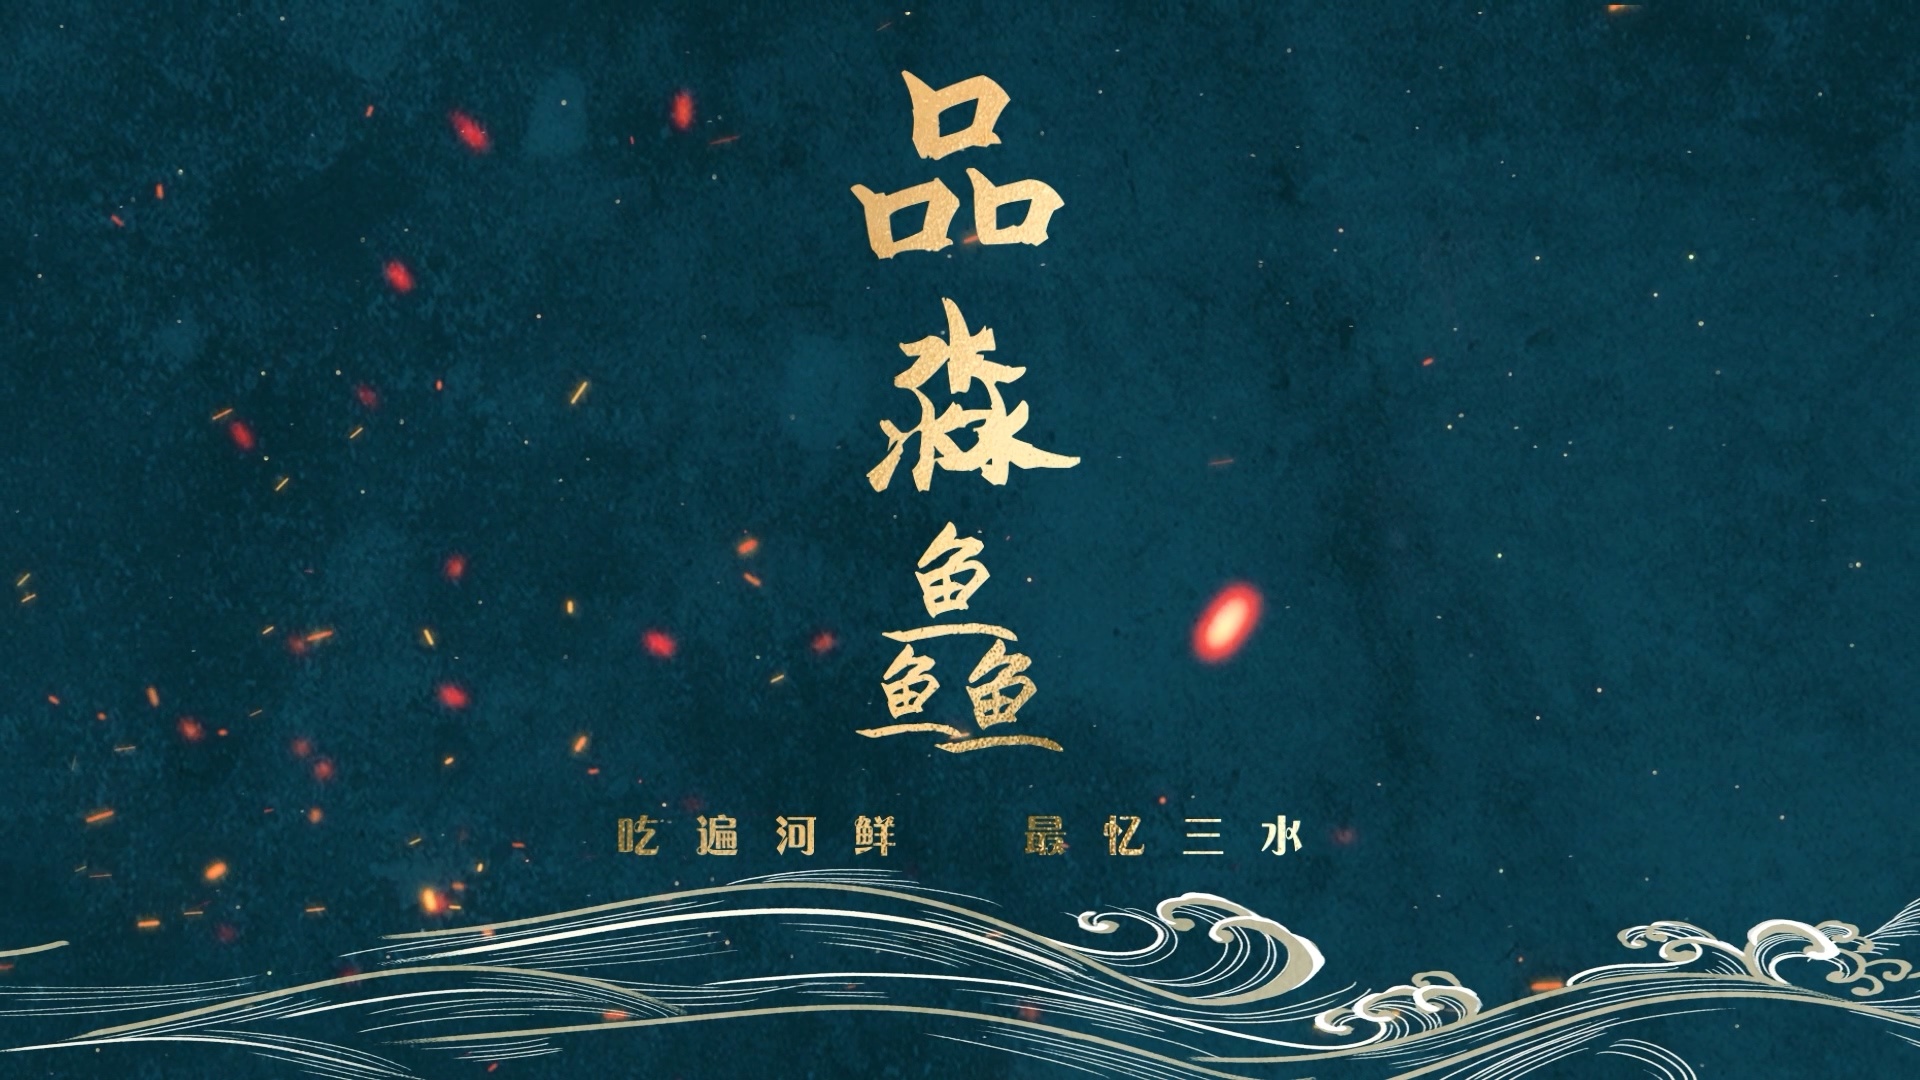 三水河鲜美食宣传片《品淼鱻》正式发布。